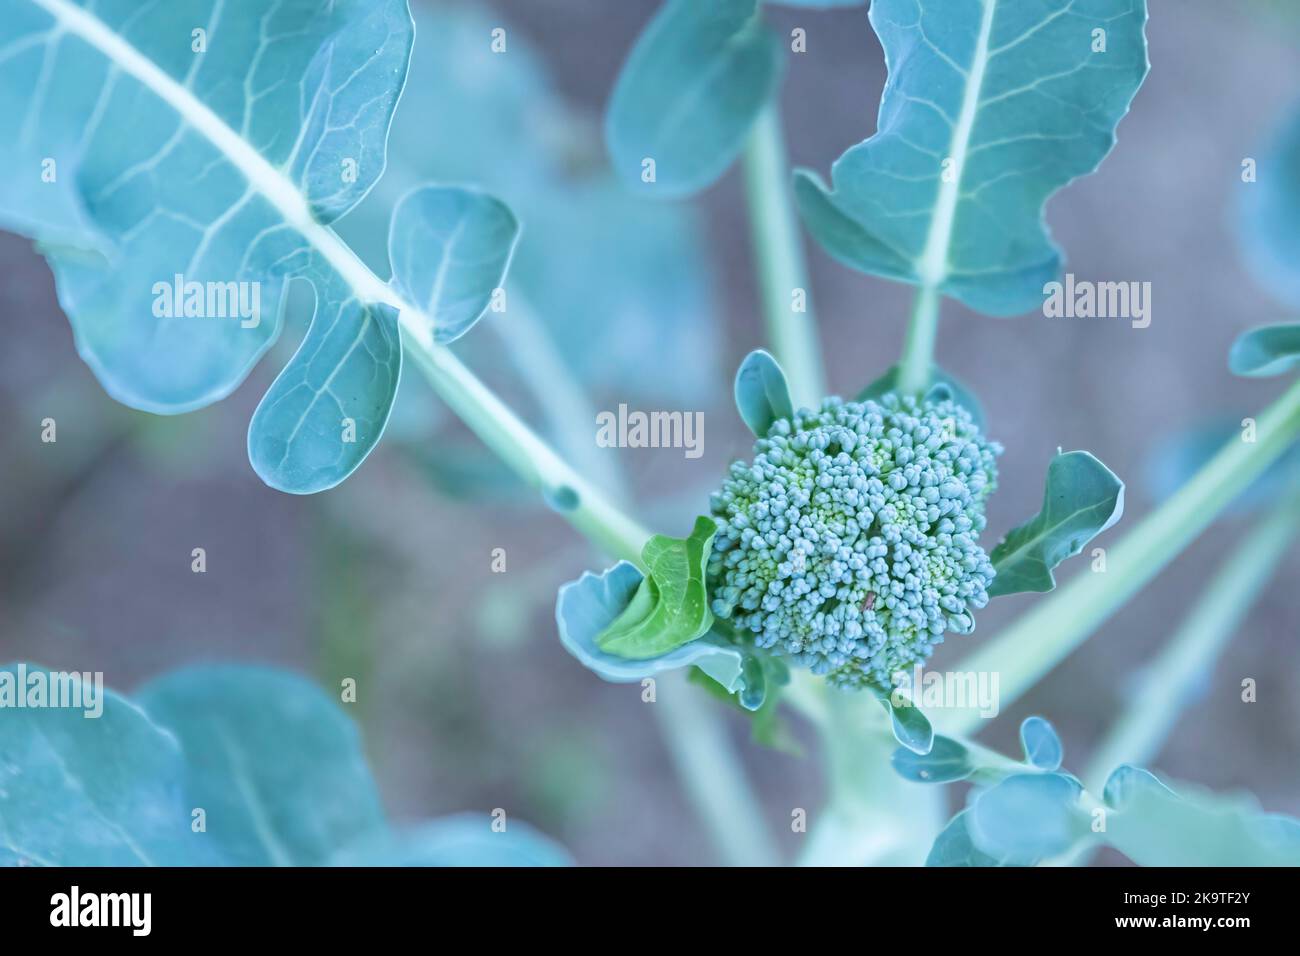 Focalizzazione selettiva sulla testa fiorente di una pianta di broccoli (Brassica oleracea) da una prospettiva aerea. Foto Stock